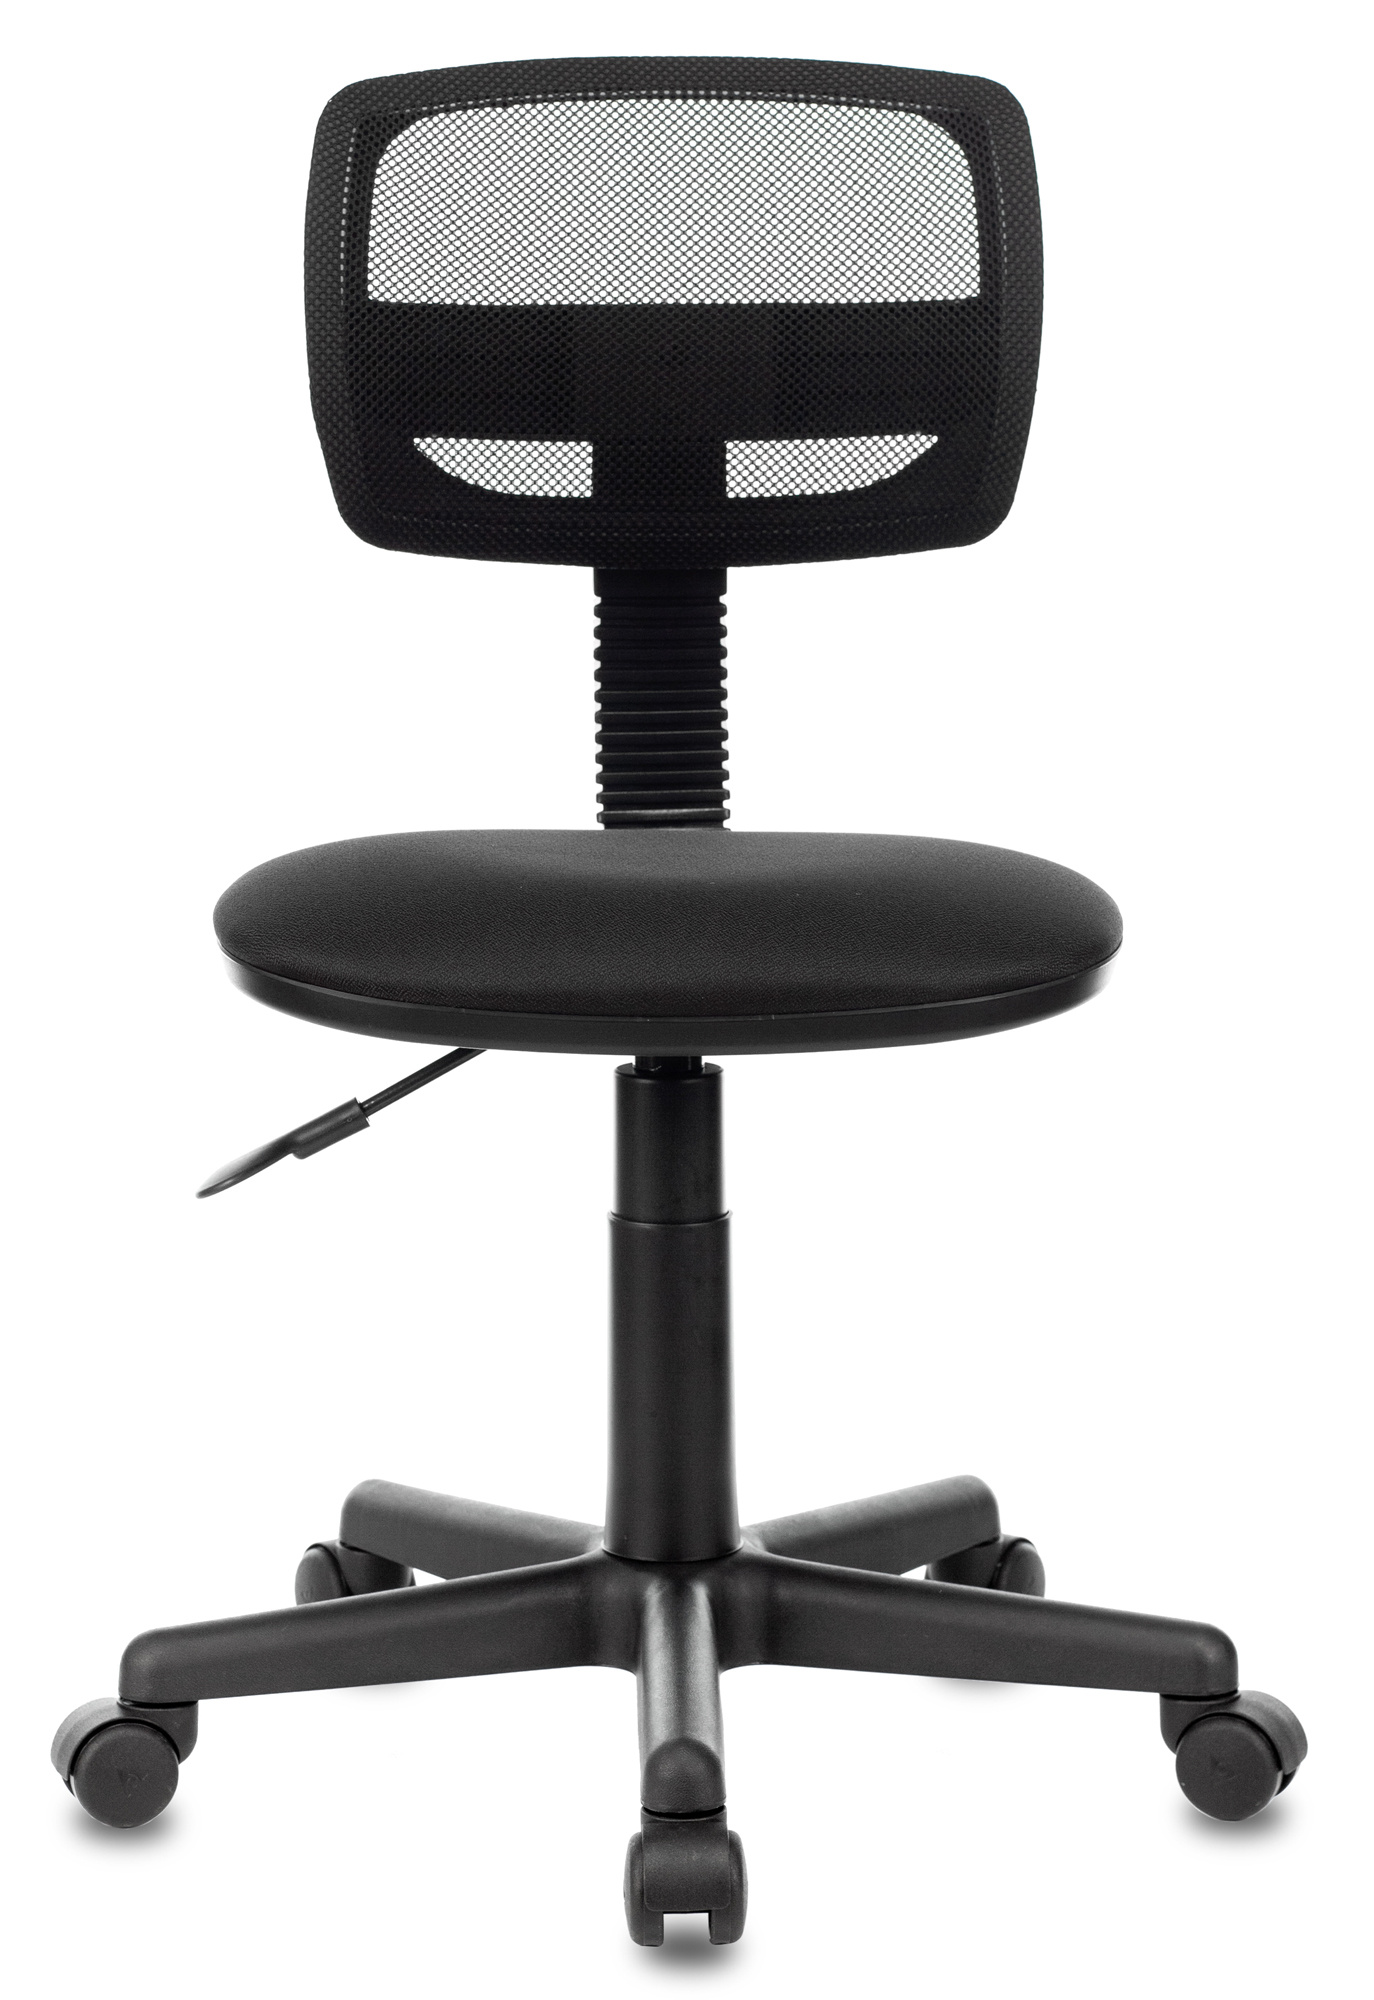 Кресло Бюрократ CH-299NX, обивка: сетка/ткань, цвет: черный/черный Neo Black (CH-299NX/15-21) от магазина Buro.store